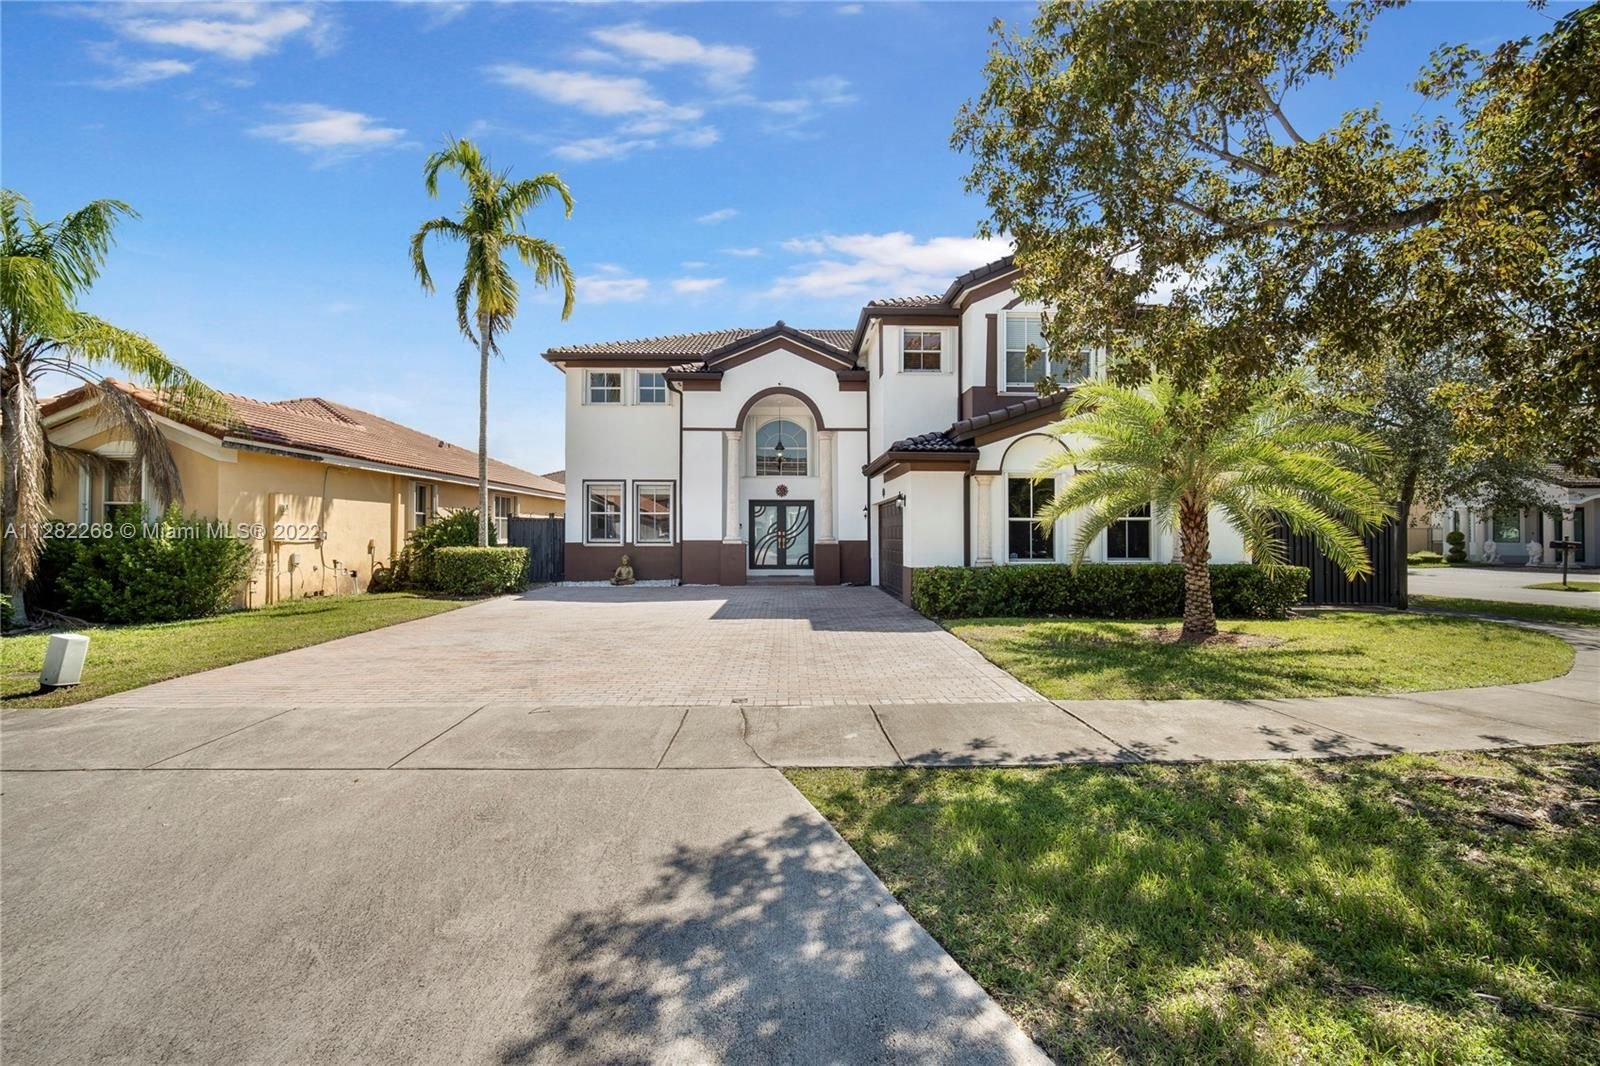 Real estate property located at 14994 11th Ln, Miami-Dade County, Miami, FL